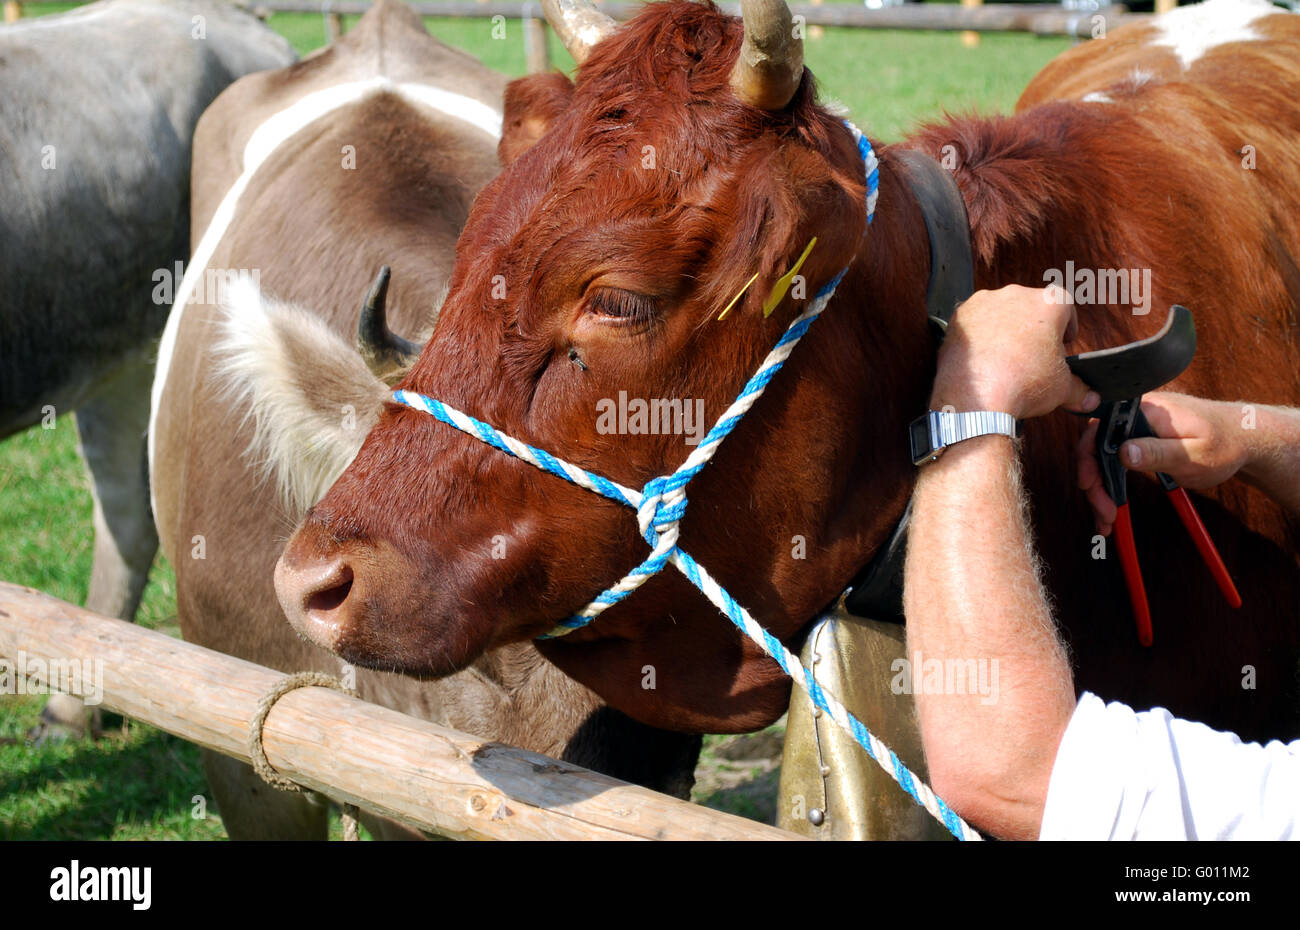 Brazos de un agricultor en el mercado de ganado, el ajuste de la correa de una vaca Foto de stock